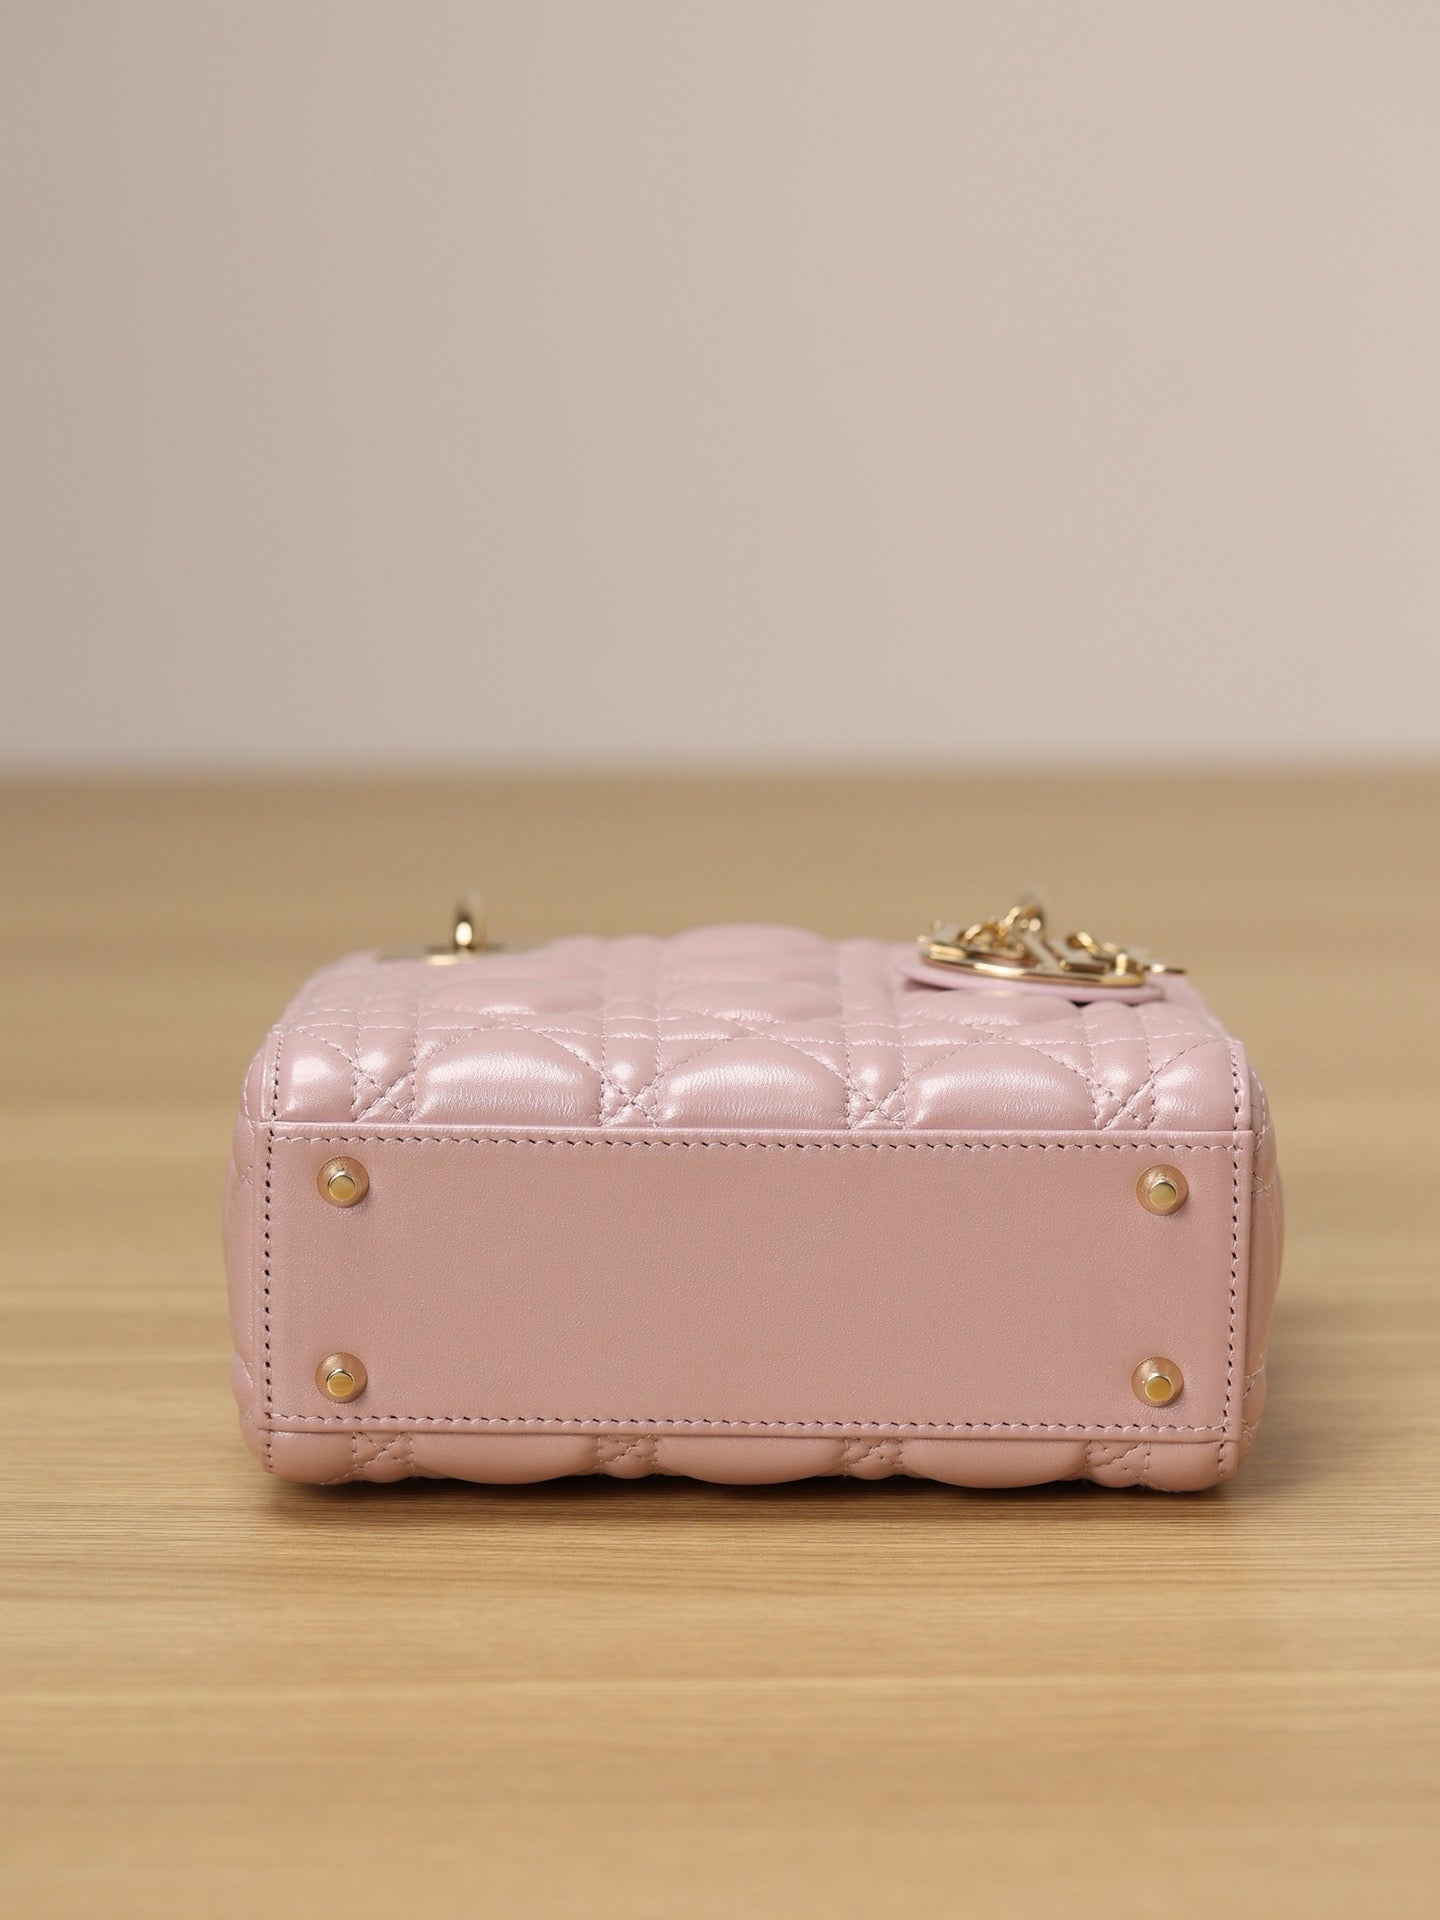 Mini Lady Dior Bag Pink Pearlescent Lamb Skin